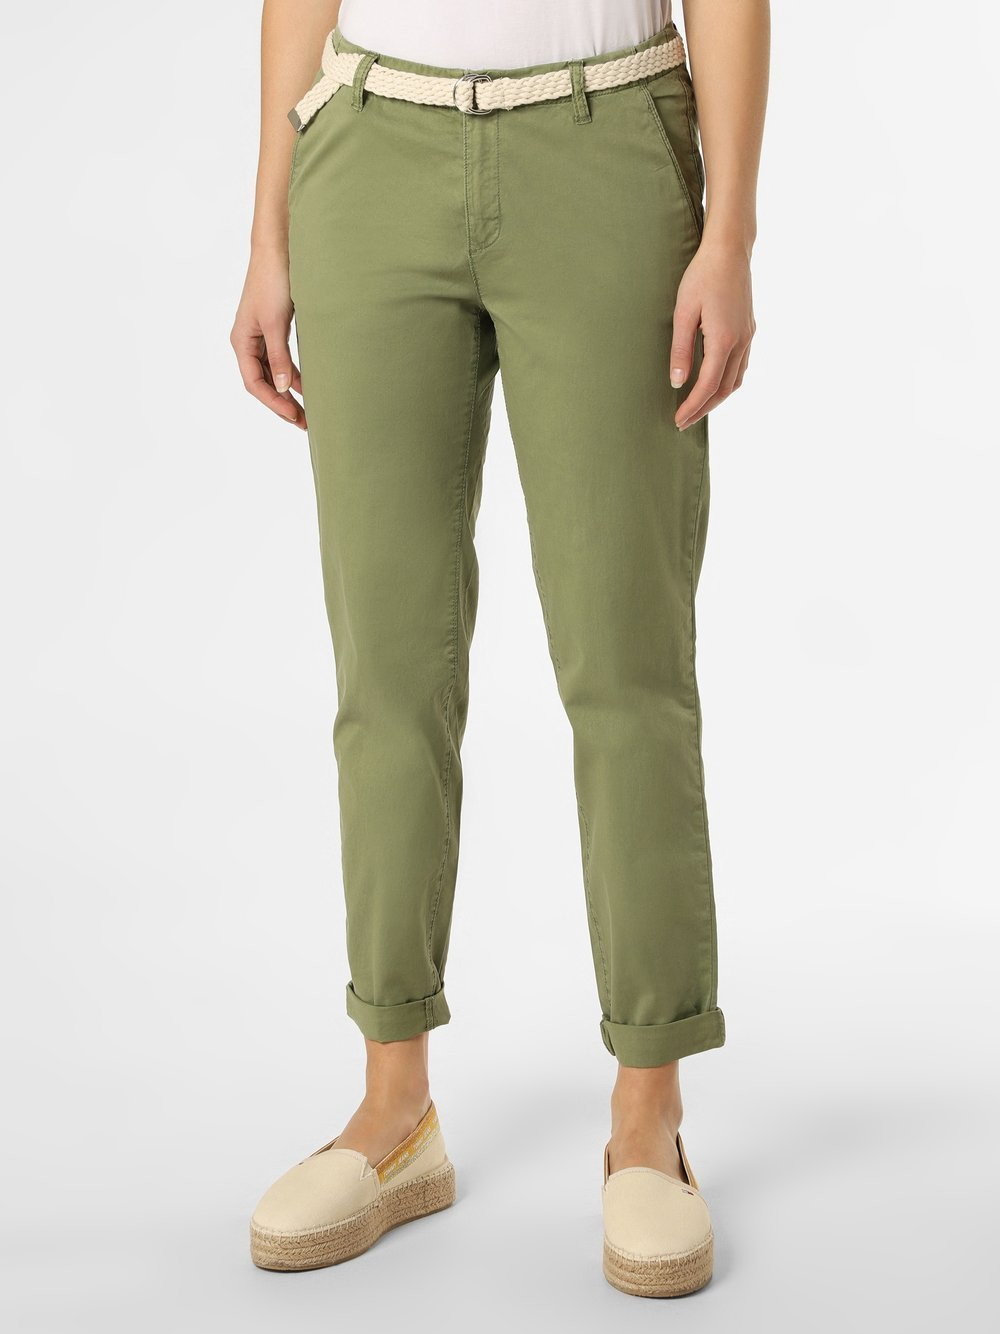 Esprit Casual Casual - Spodnie damskie, zielony